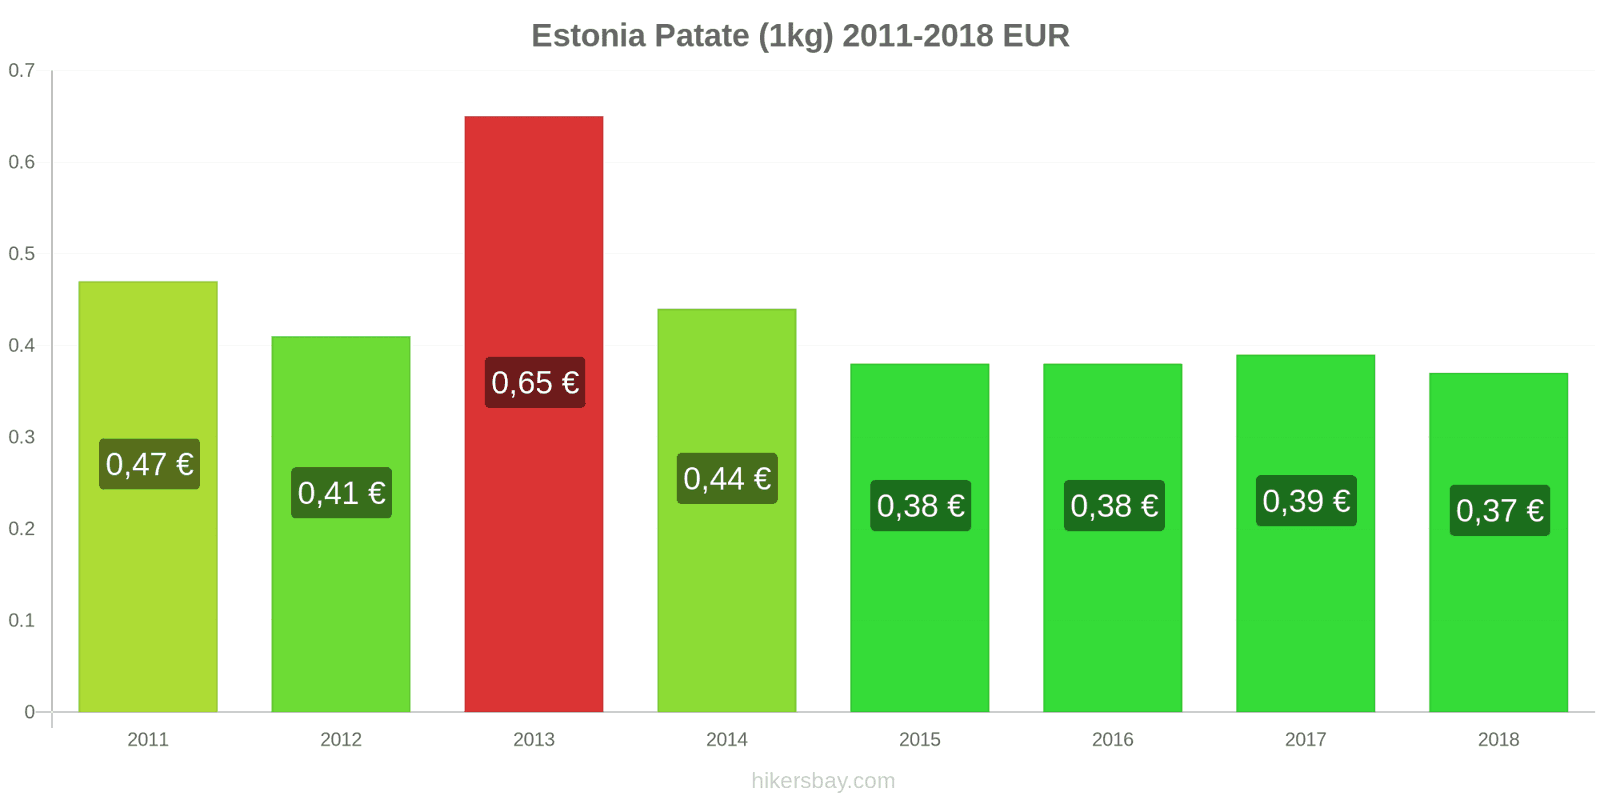 Estonia cambi di prezzo Patate (1kg) hikersbay.com